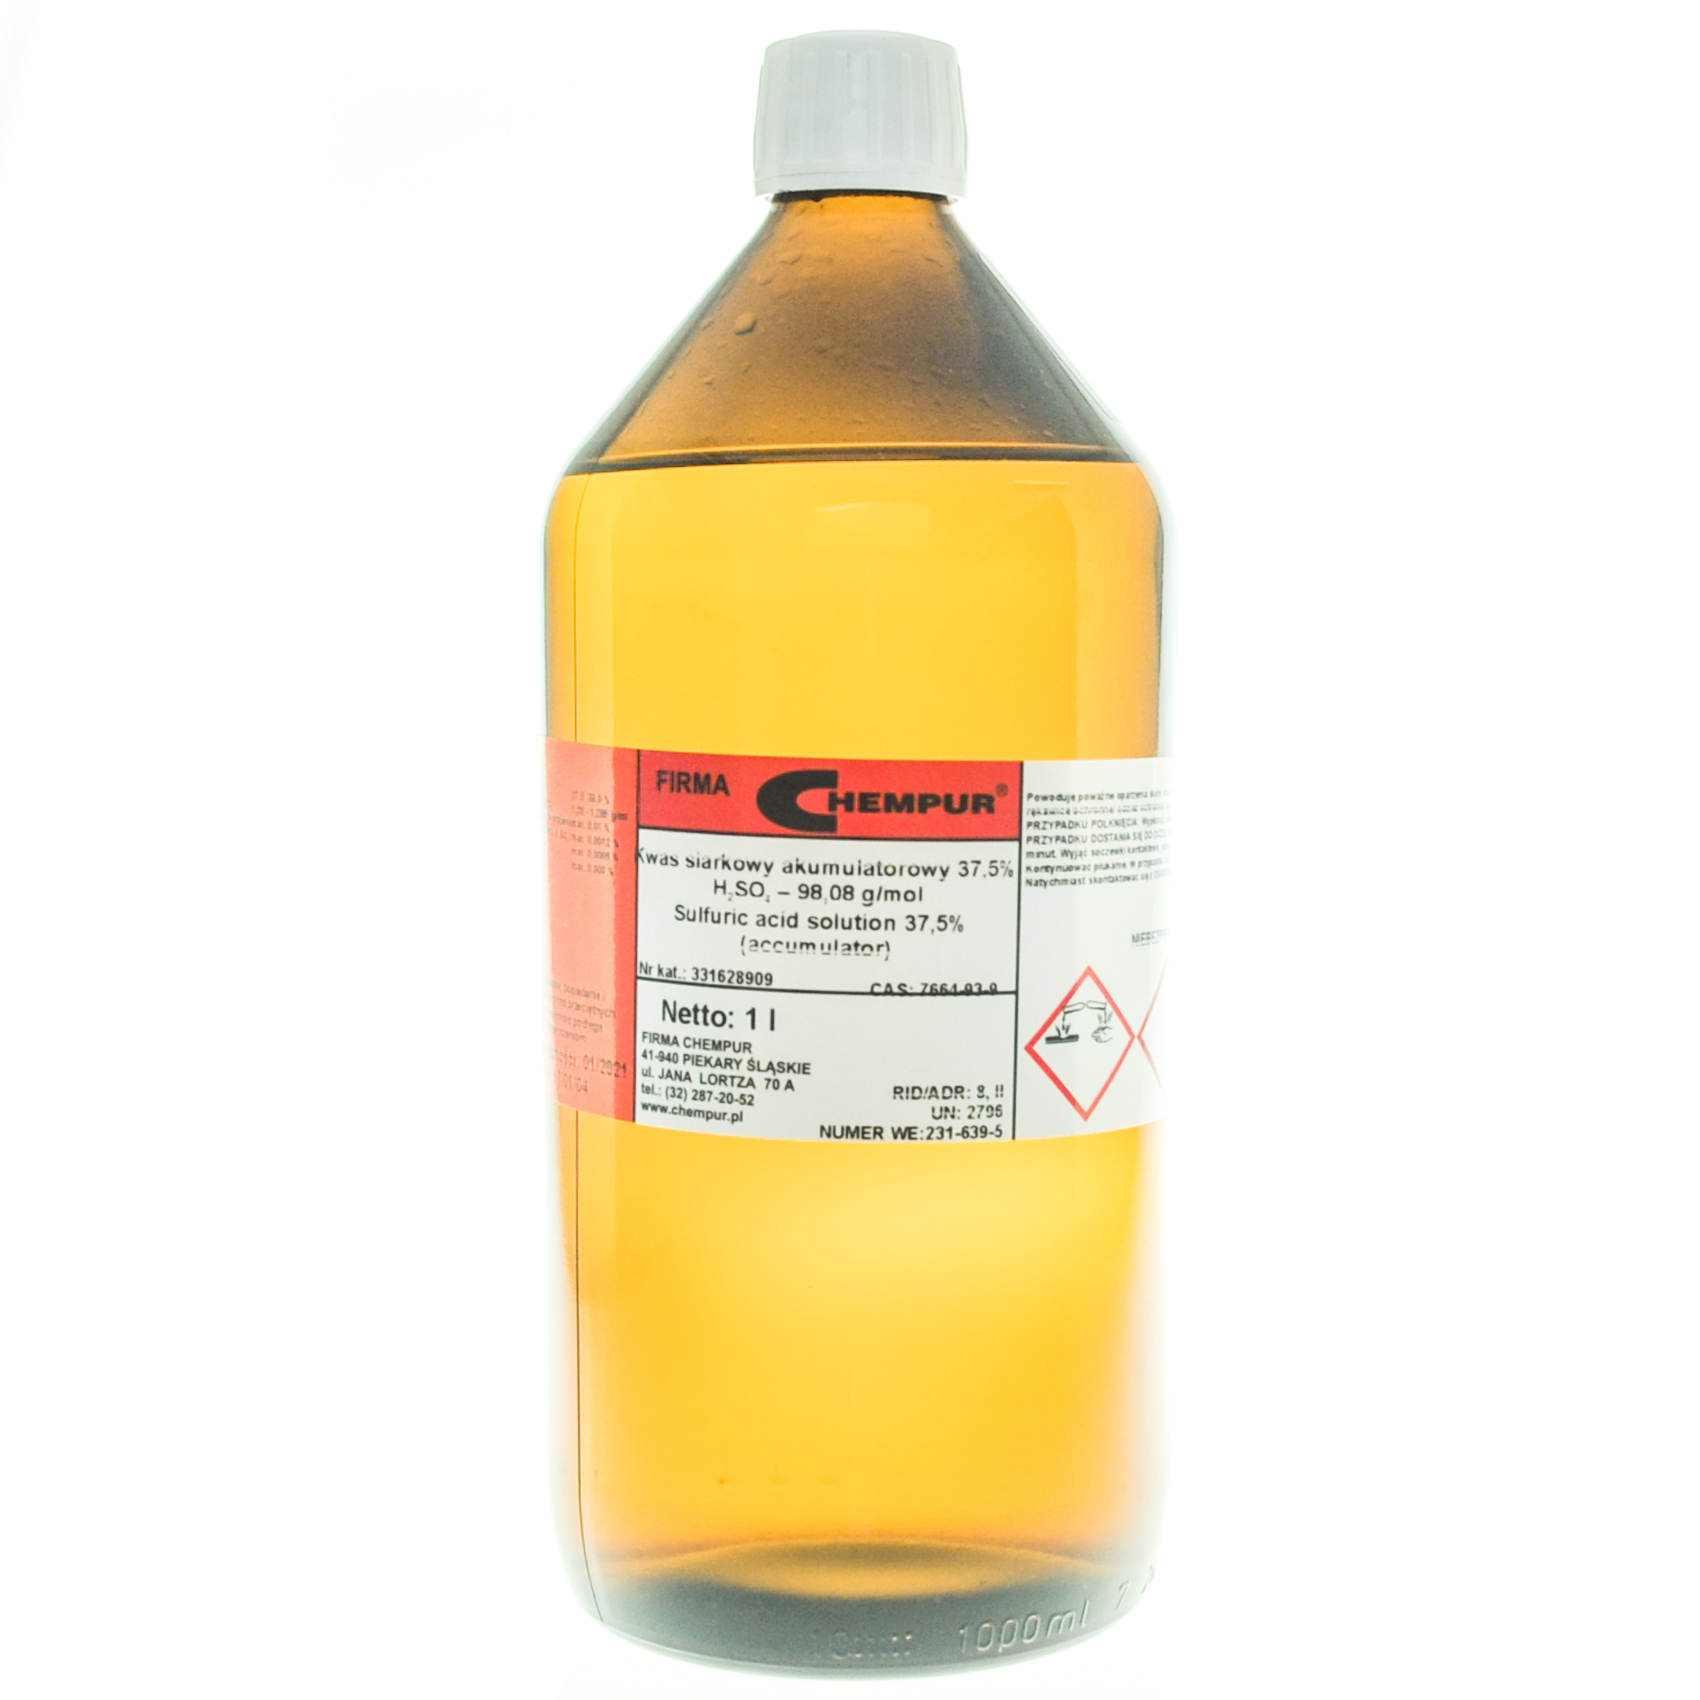 Sulfuric acid solution 37,5% (accumulator)